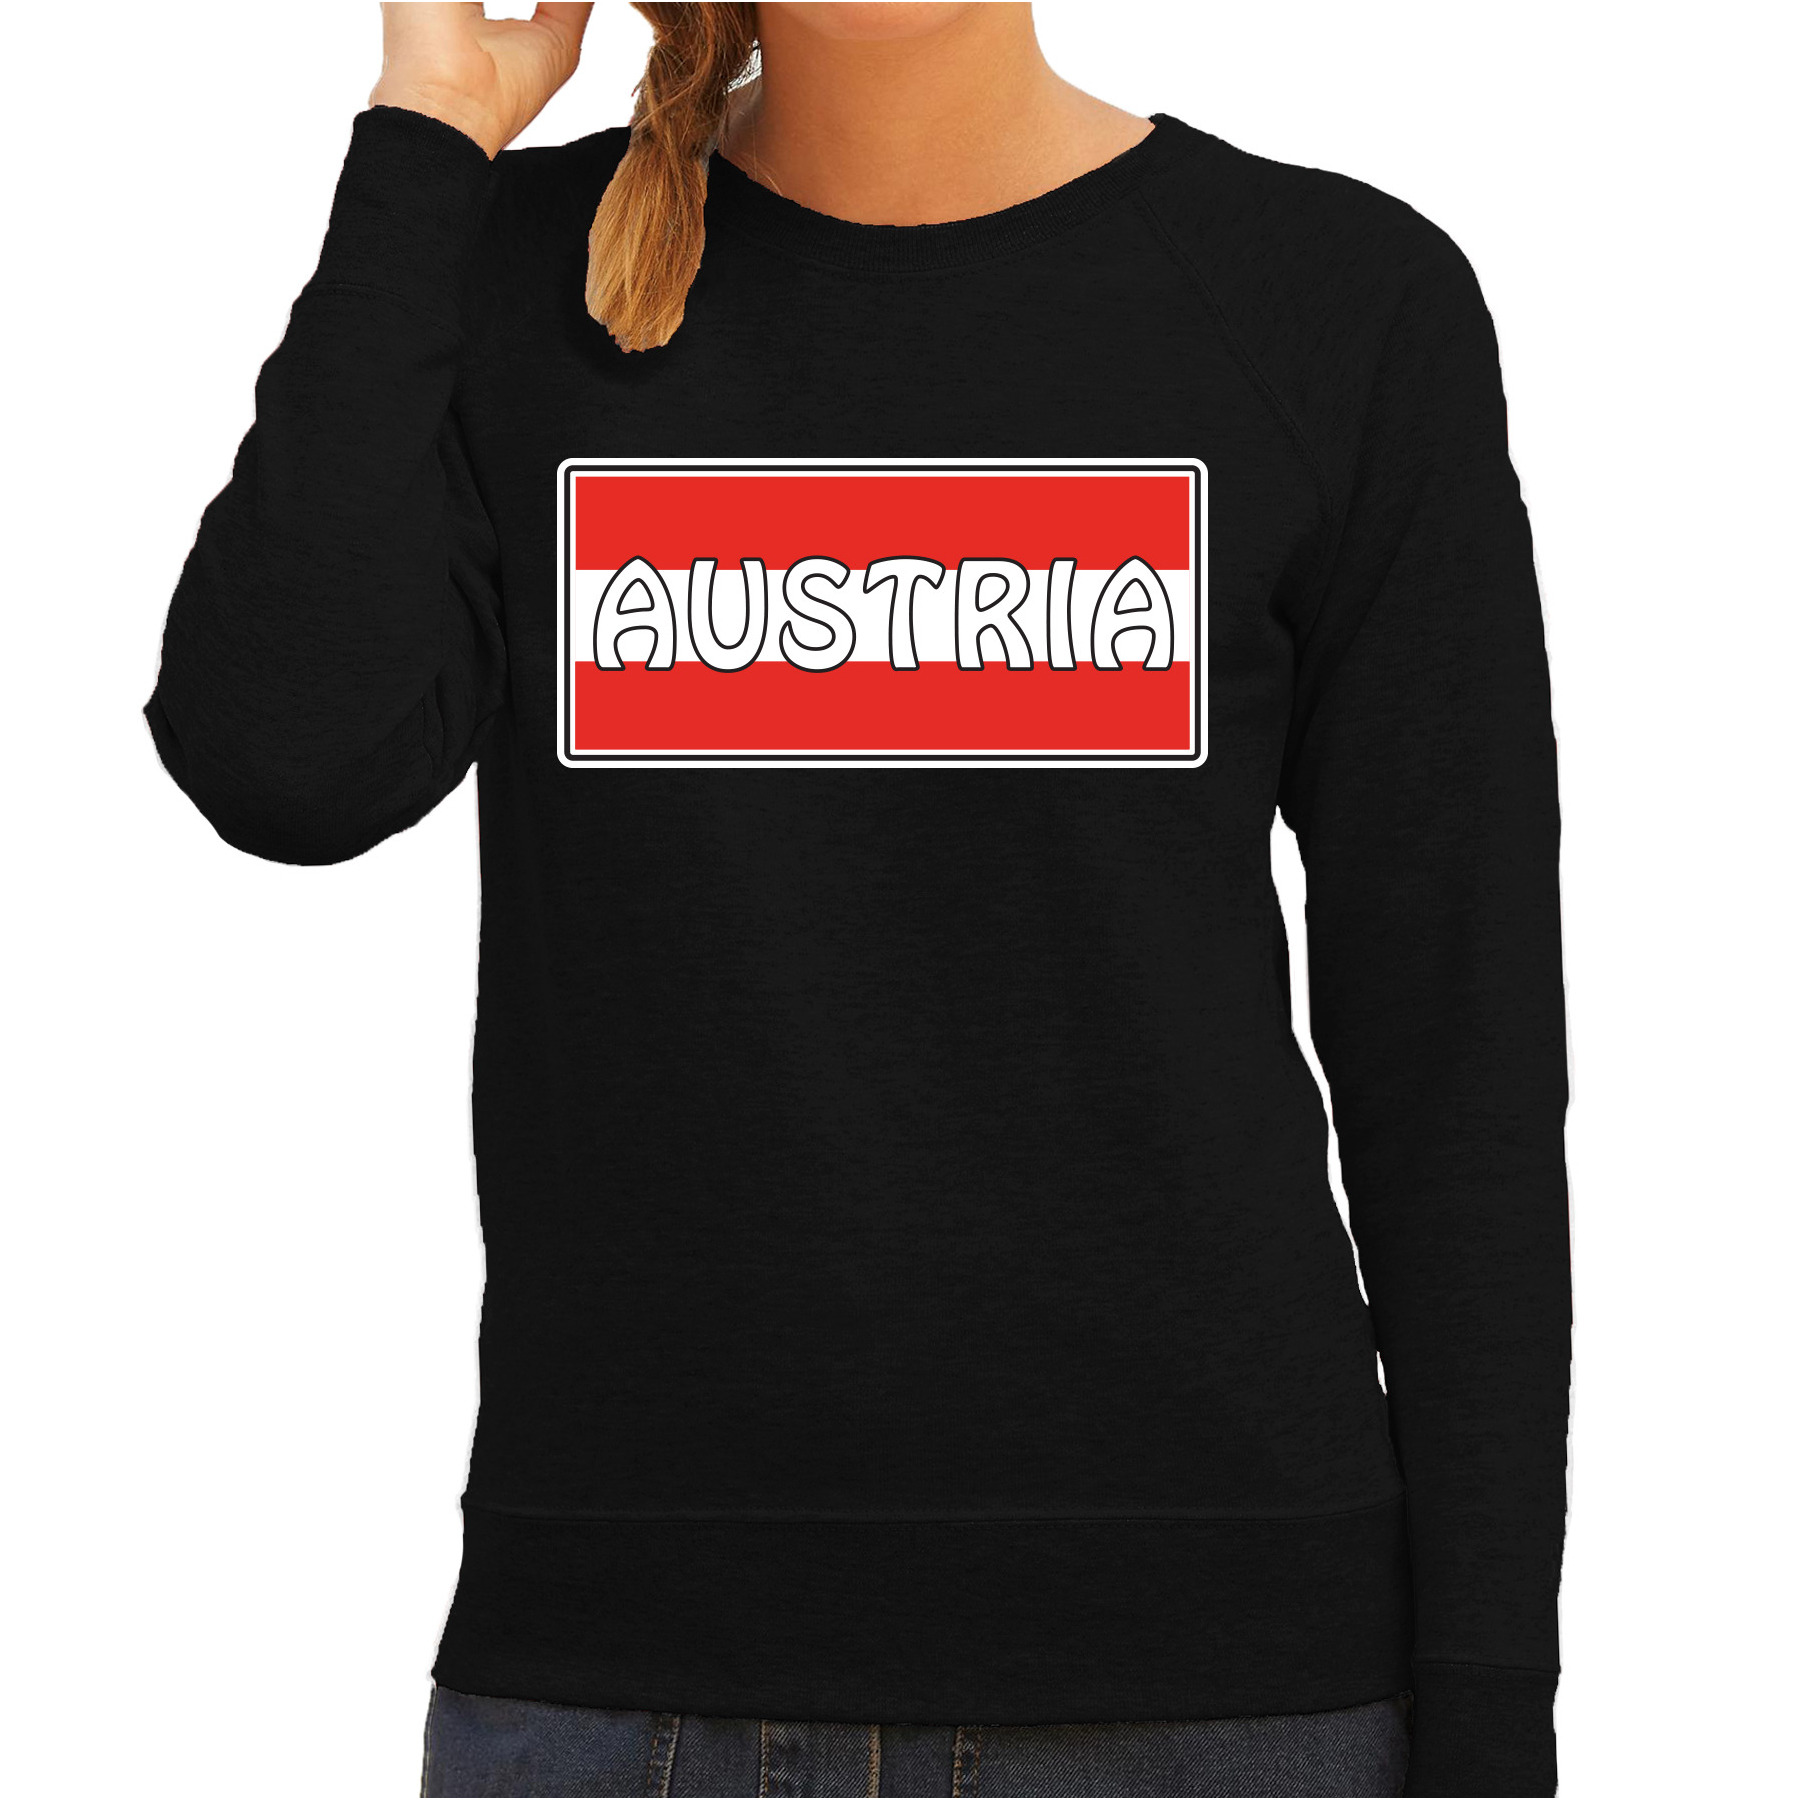 Oostenrijk-Austria landen sweater zwart dames